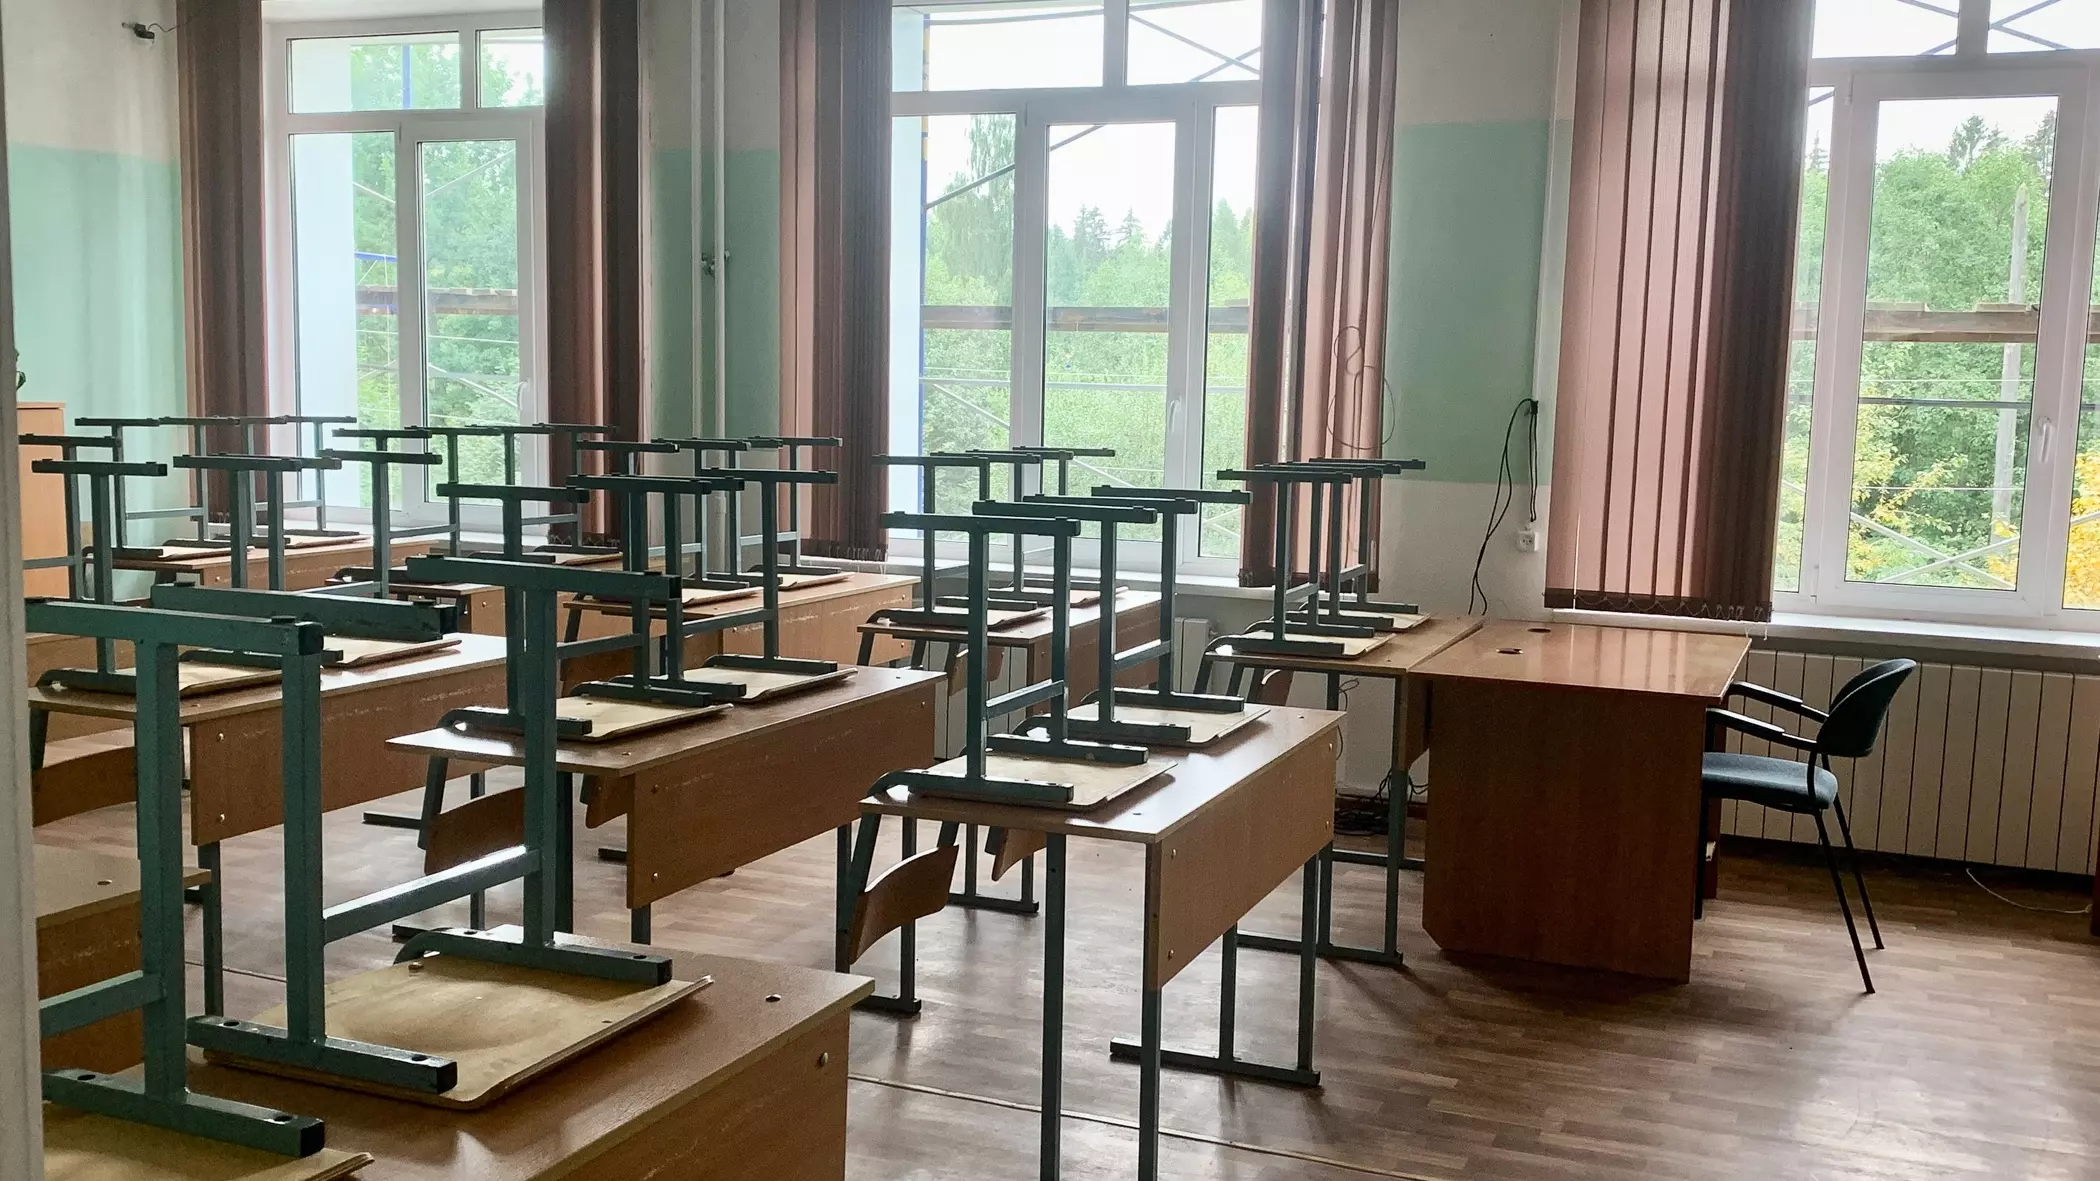 В школьных чатах появились анонимные угрозы расправы над детьми в Новосибирске